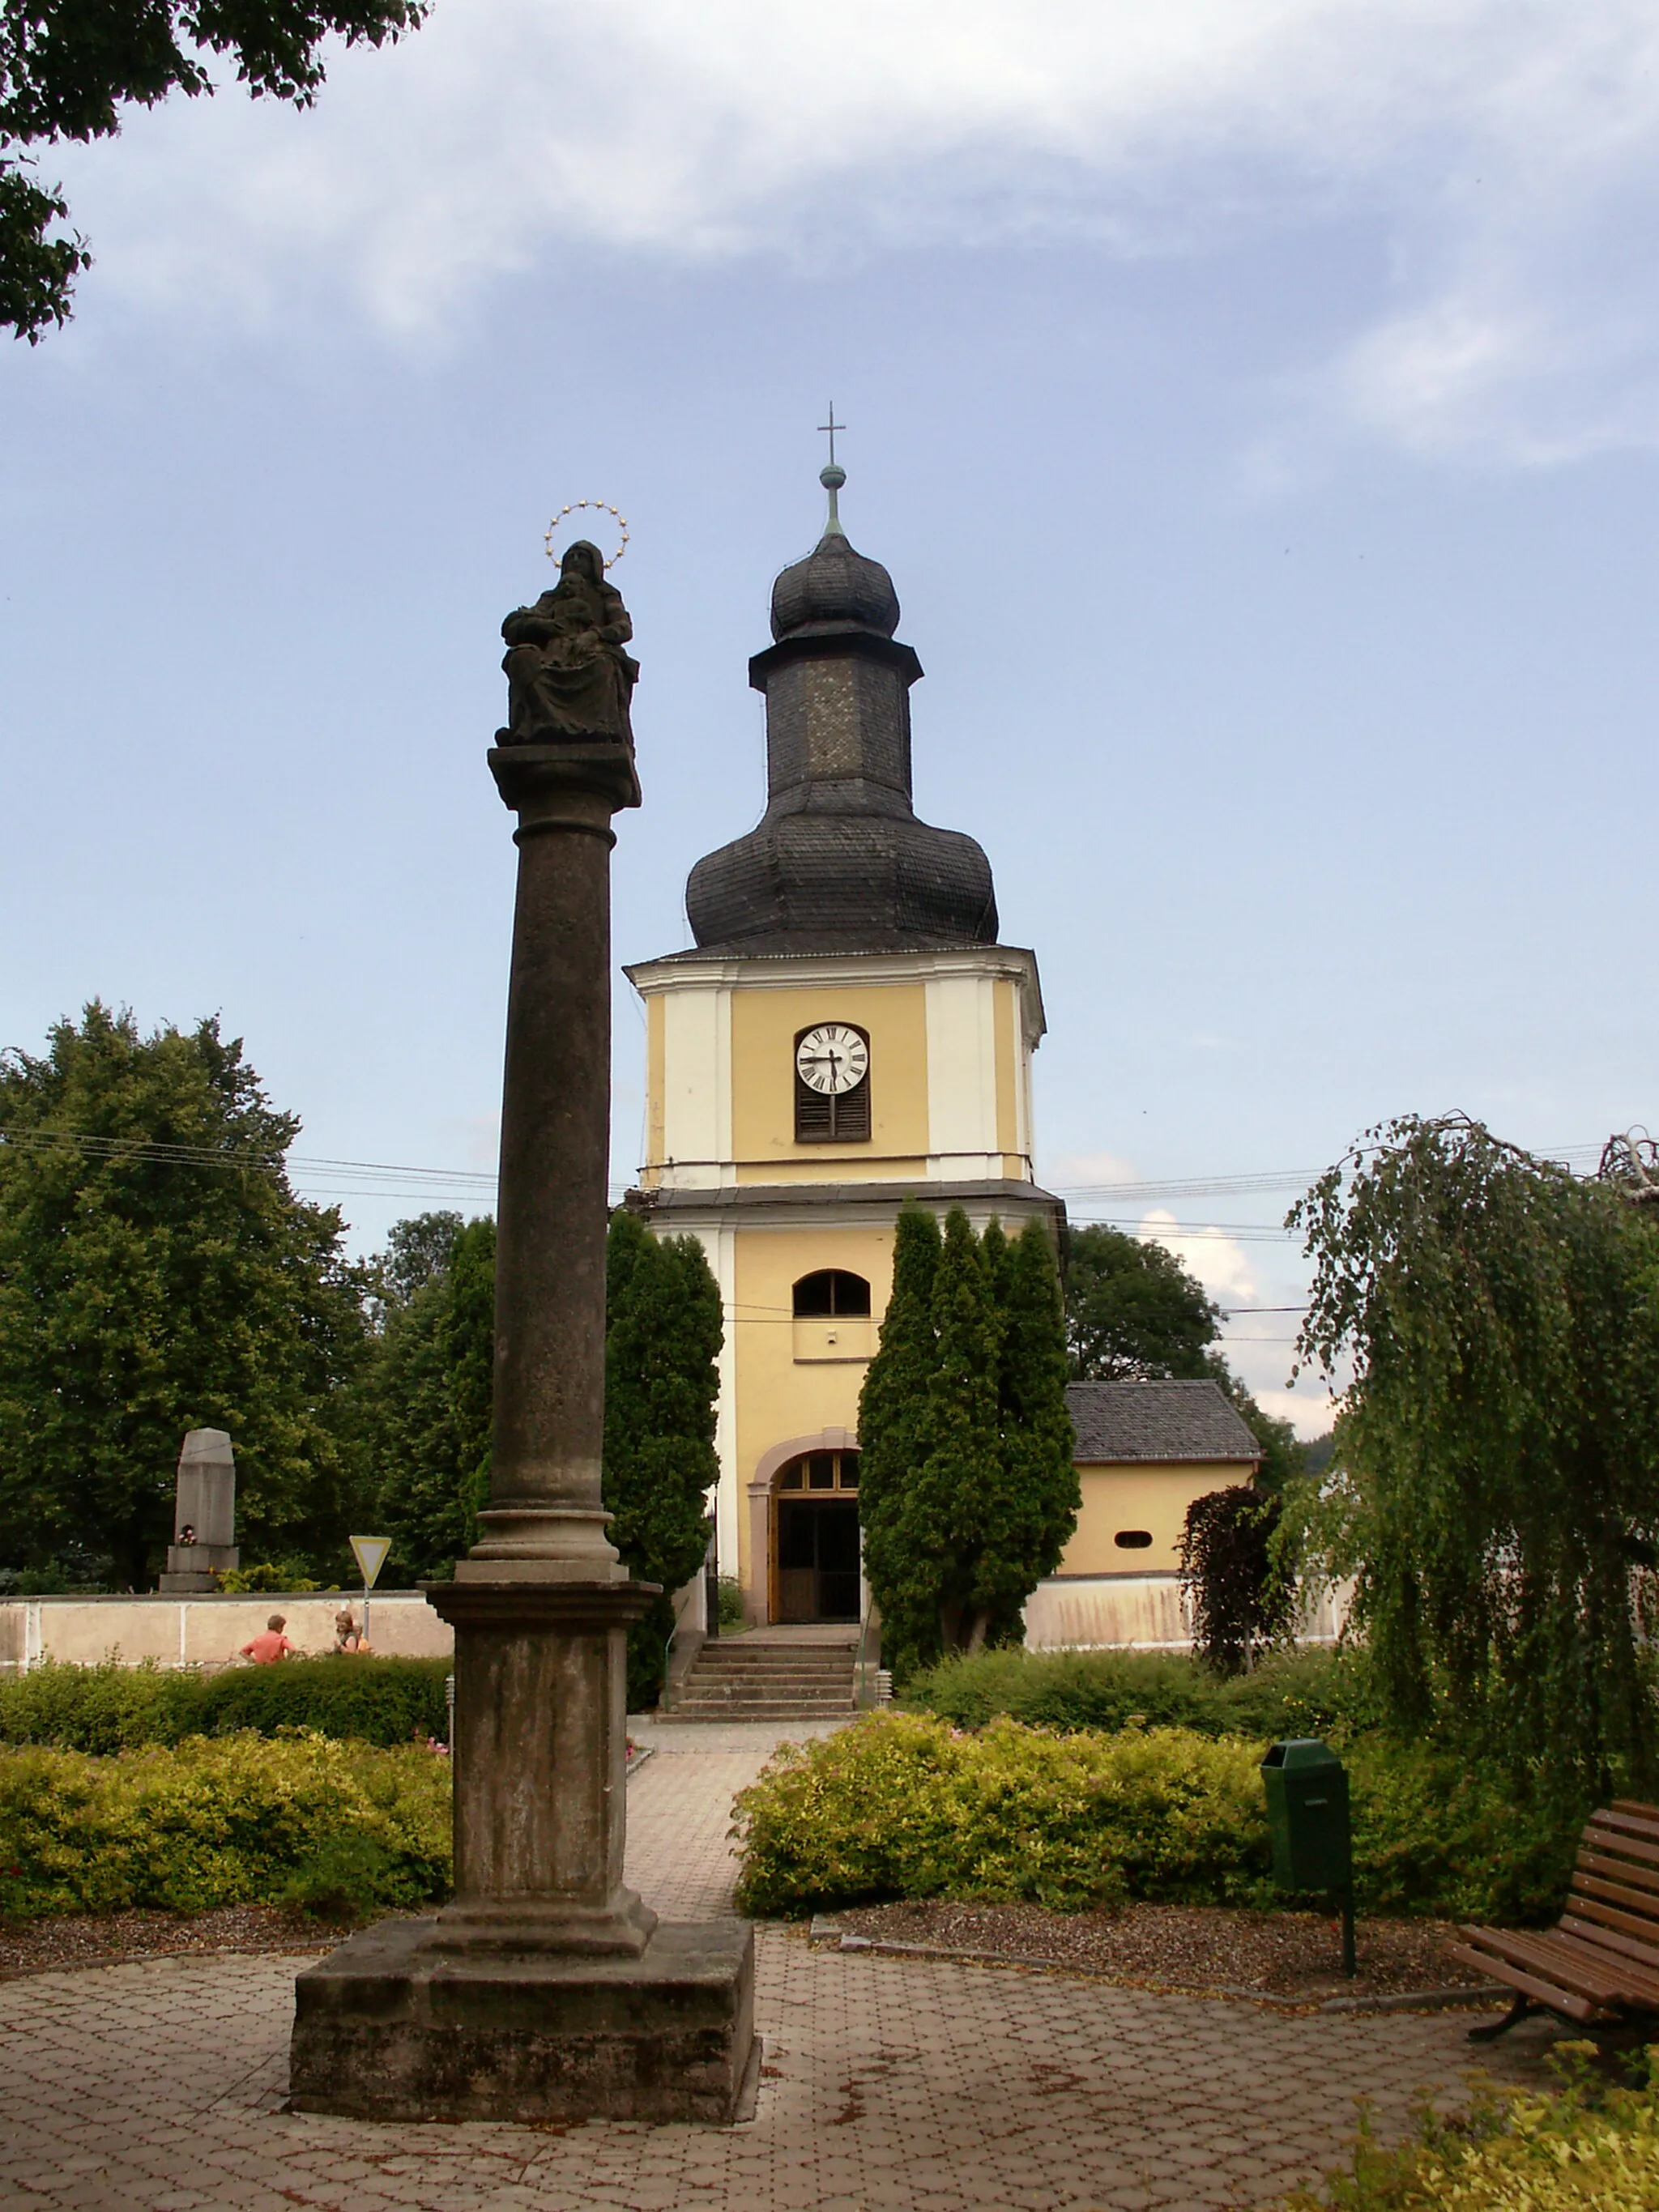 Photo showing: Libice nad Doubravou, městys v okrese Havlíčkův Brod, toskánský mariánský sloup na náměstí sv. Jiljí, v pozadí kostel sv. Jiljí